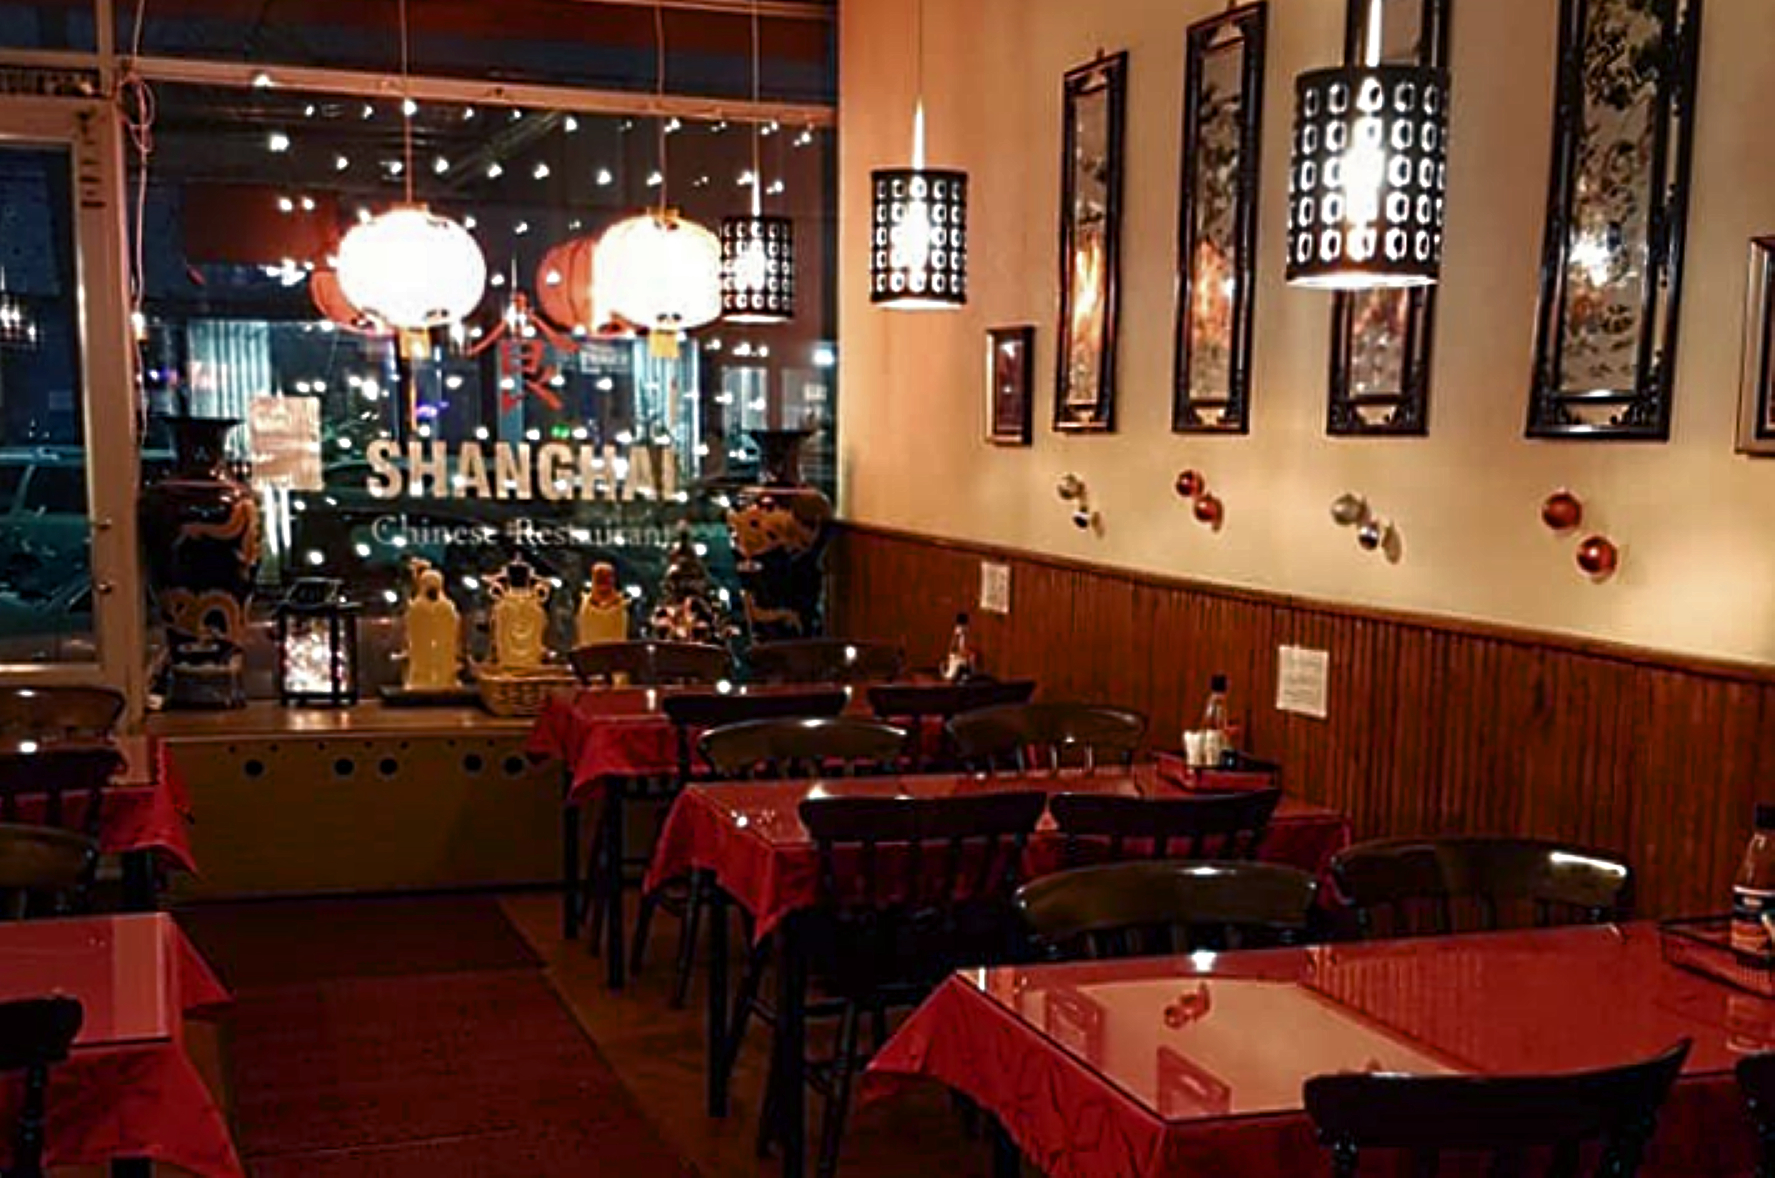 Chinese restaurant - Wikipedia